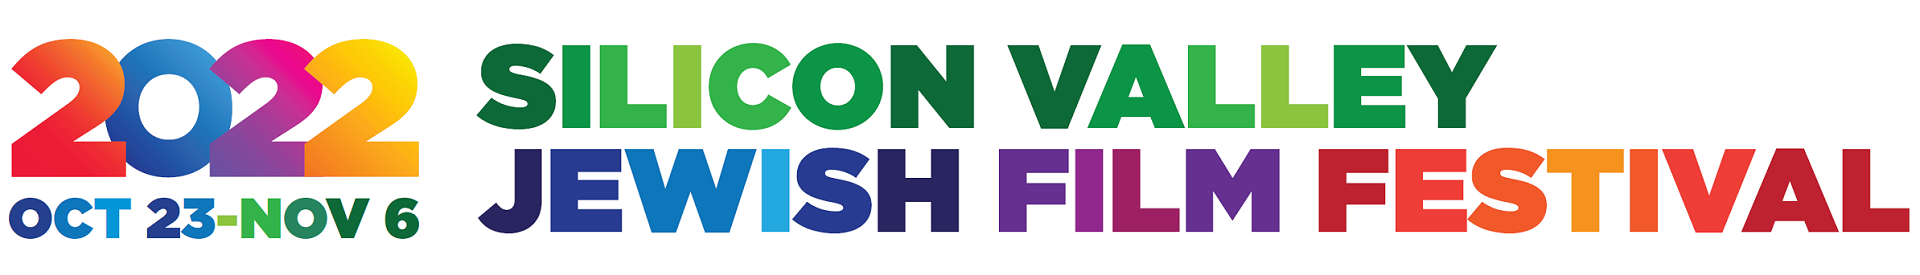 Silicon Valley Jewish Film Festival (SVJFF)